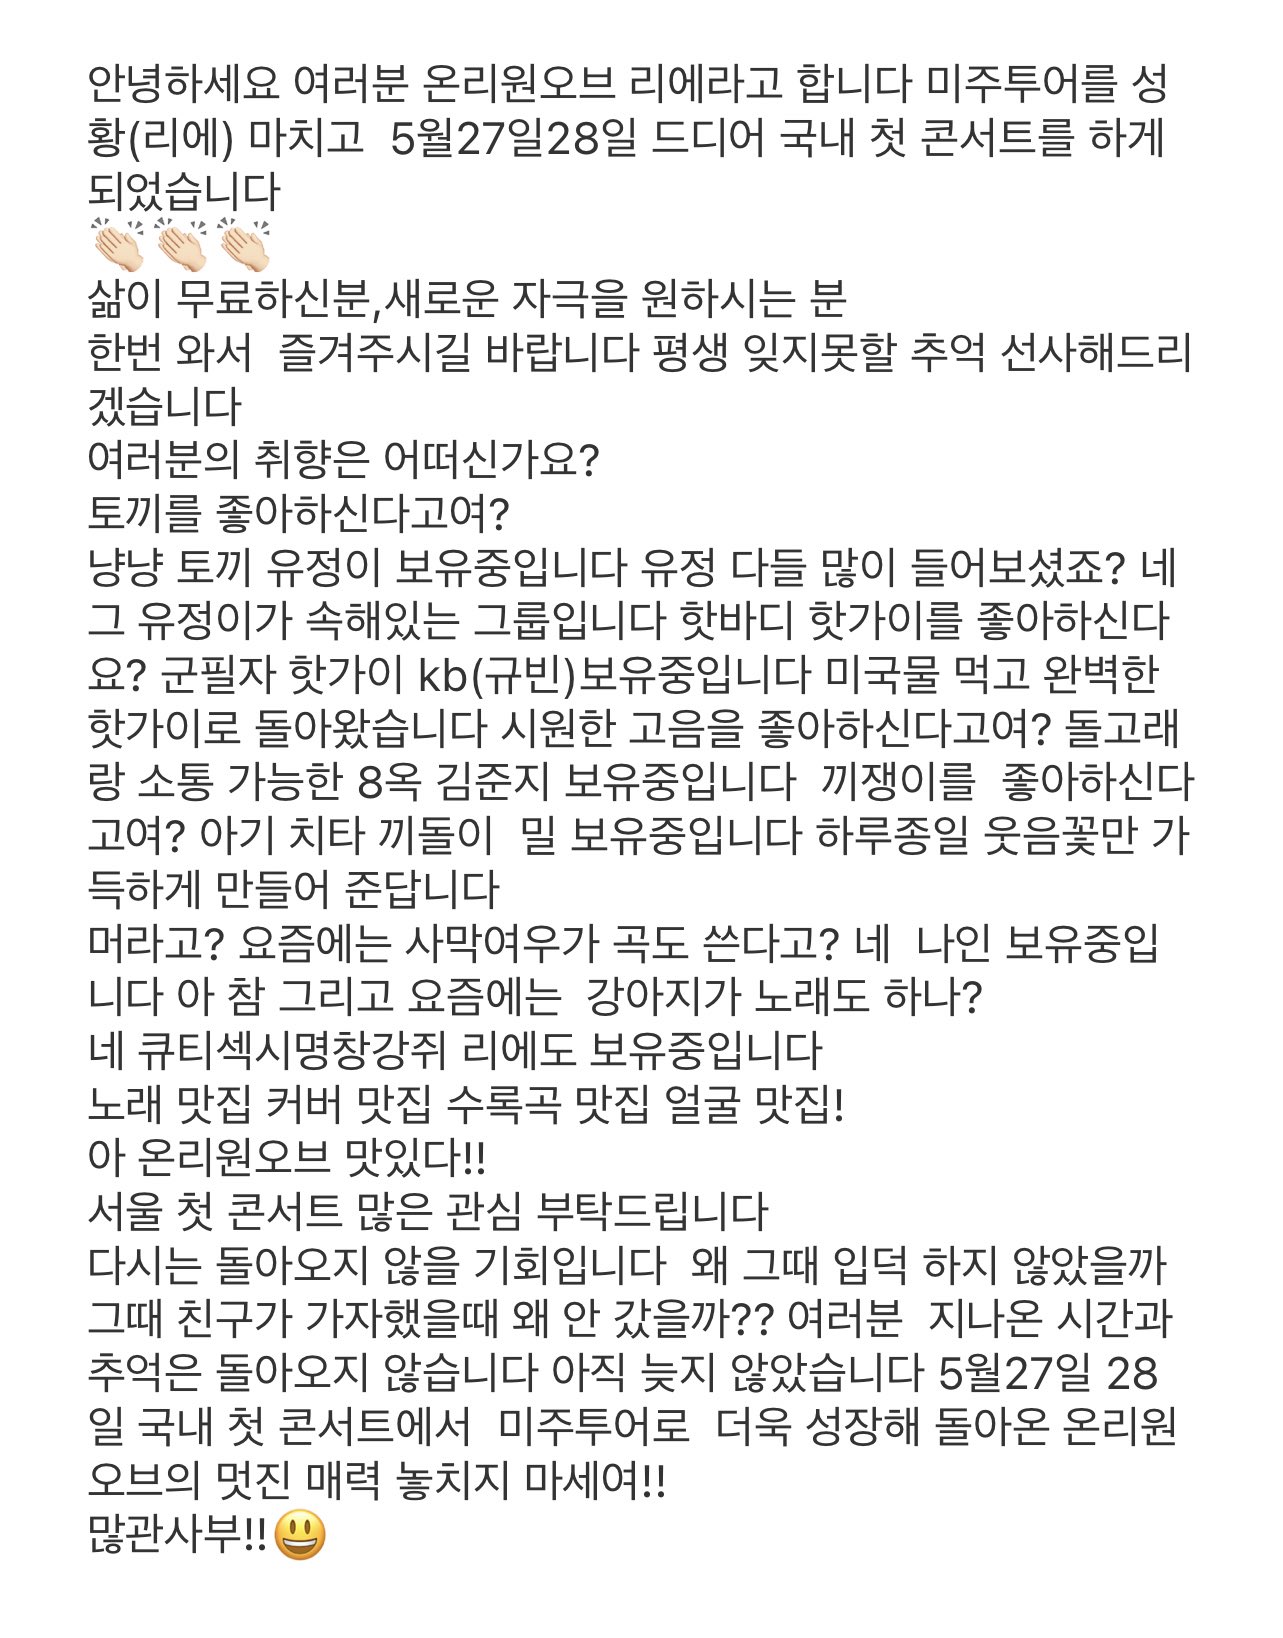 데뷔 4년 만에 국내 첫 단콘 개최한 아이돌.jpg